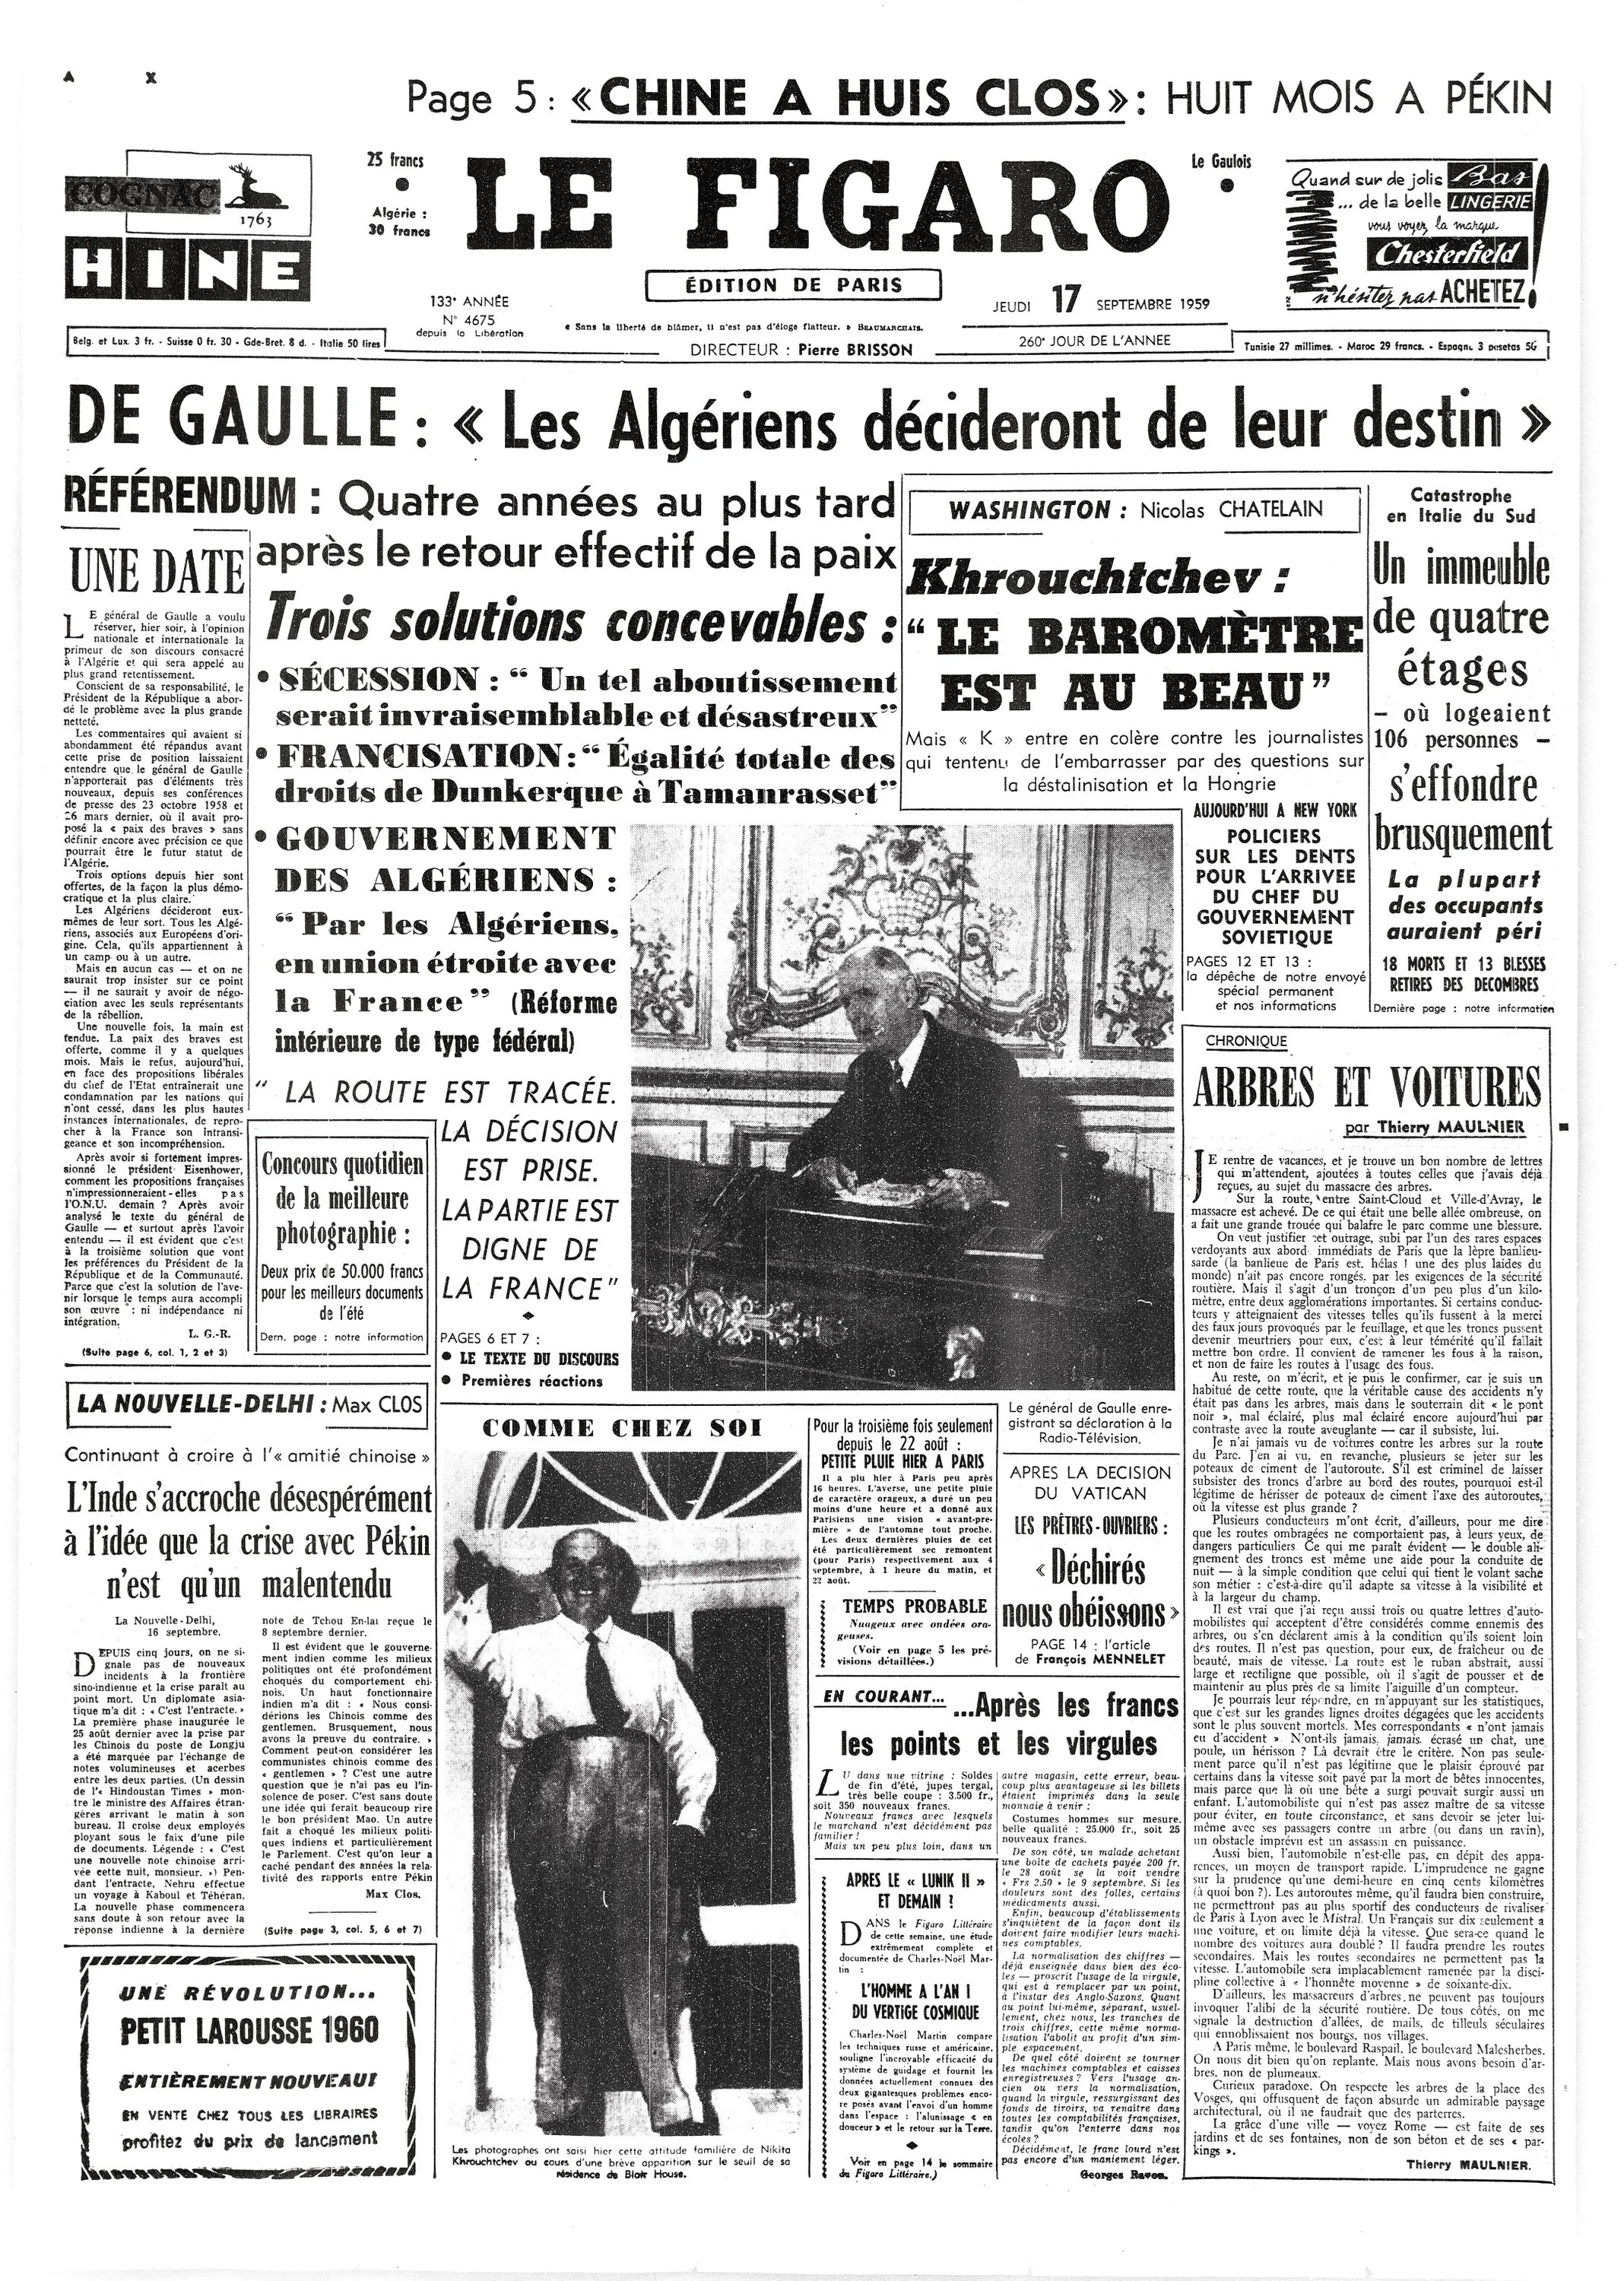 Le choix de l'autodétermination par De Gaulle, Le Figaro, 17 septembre 1959.